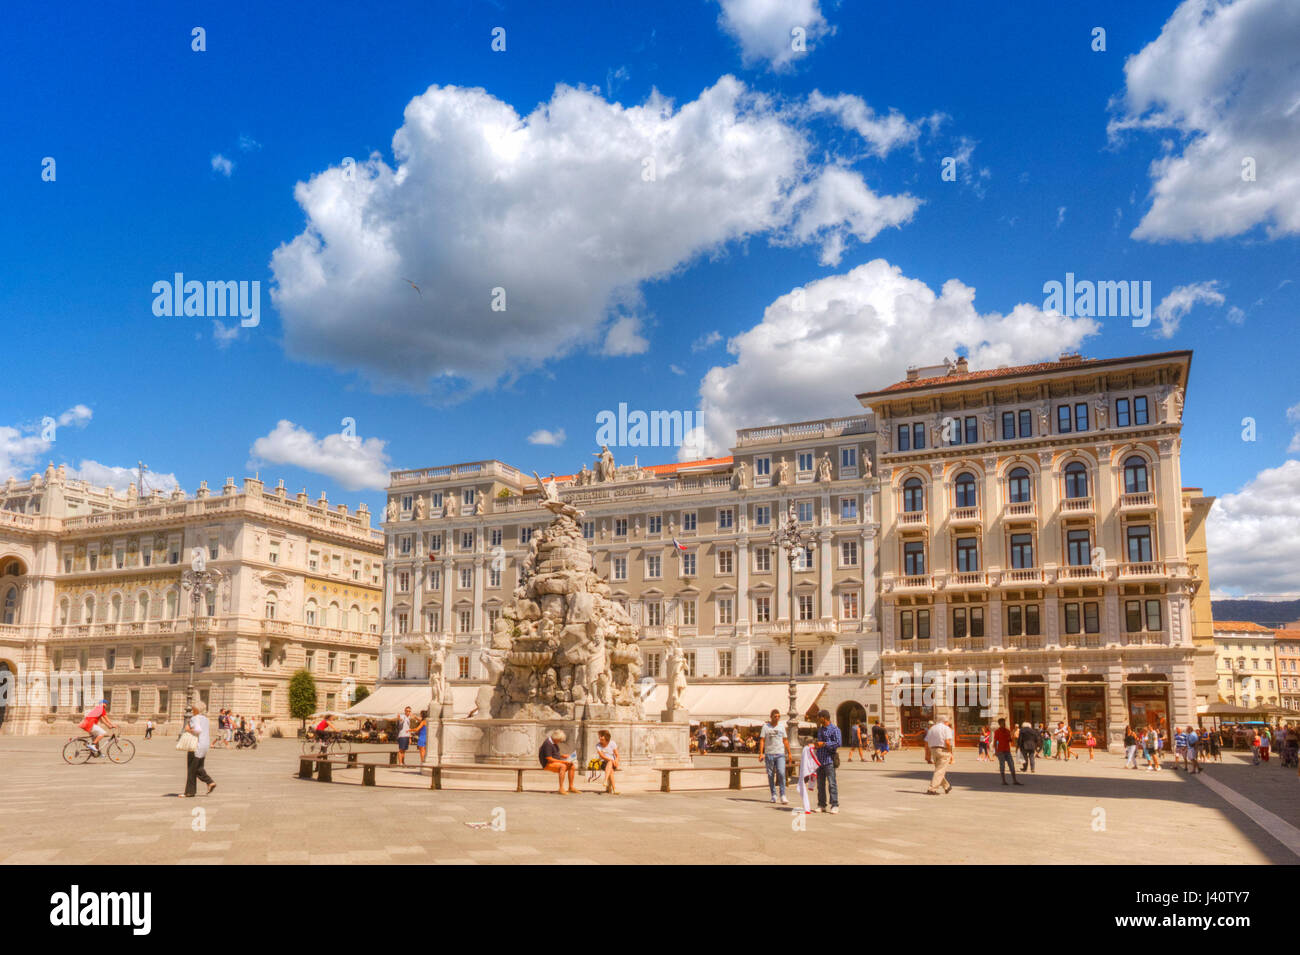 Trieste. Beautiful sunny morning in Piazza Unità d'Italia. Stock Photo